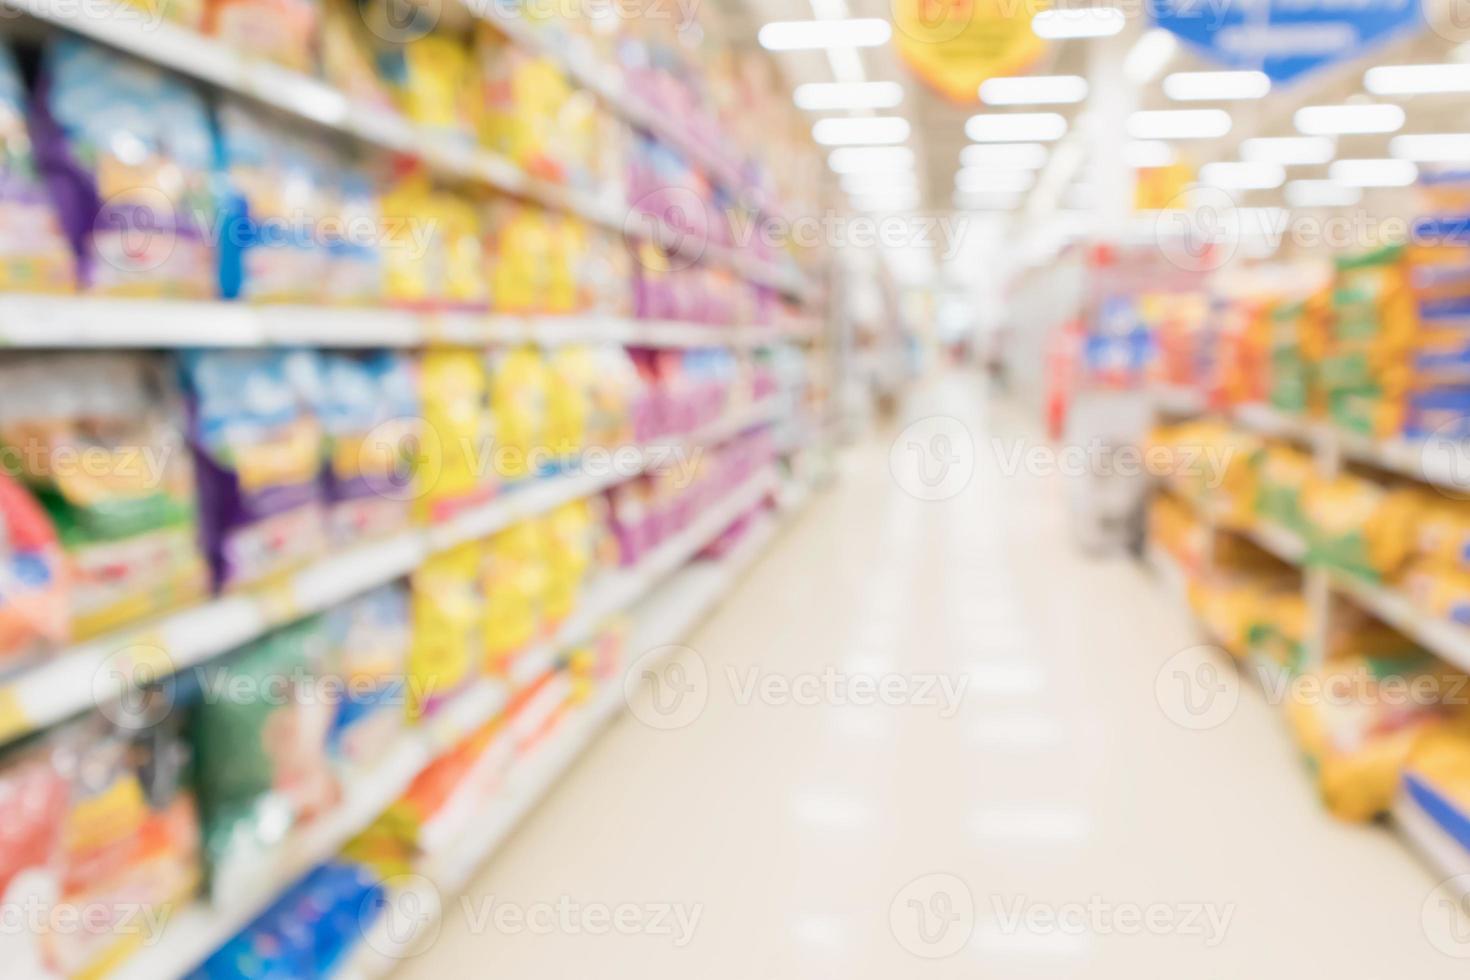 abstrait flou supermarché discount store allée et étagères de produits intérieur arrière-plan défocalisé photo